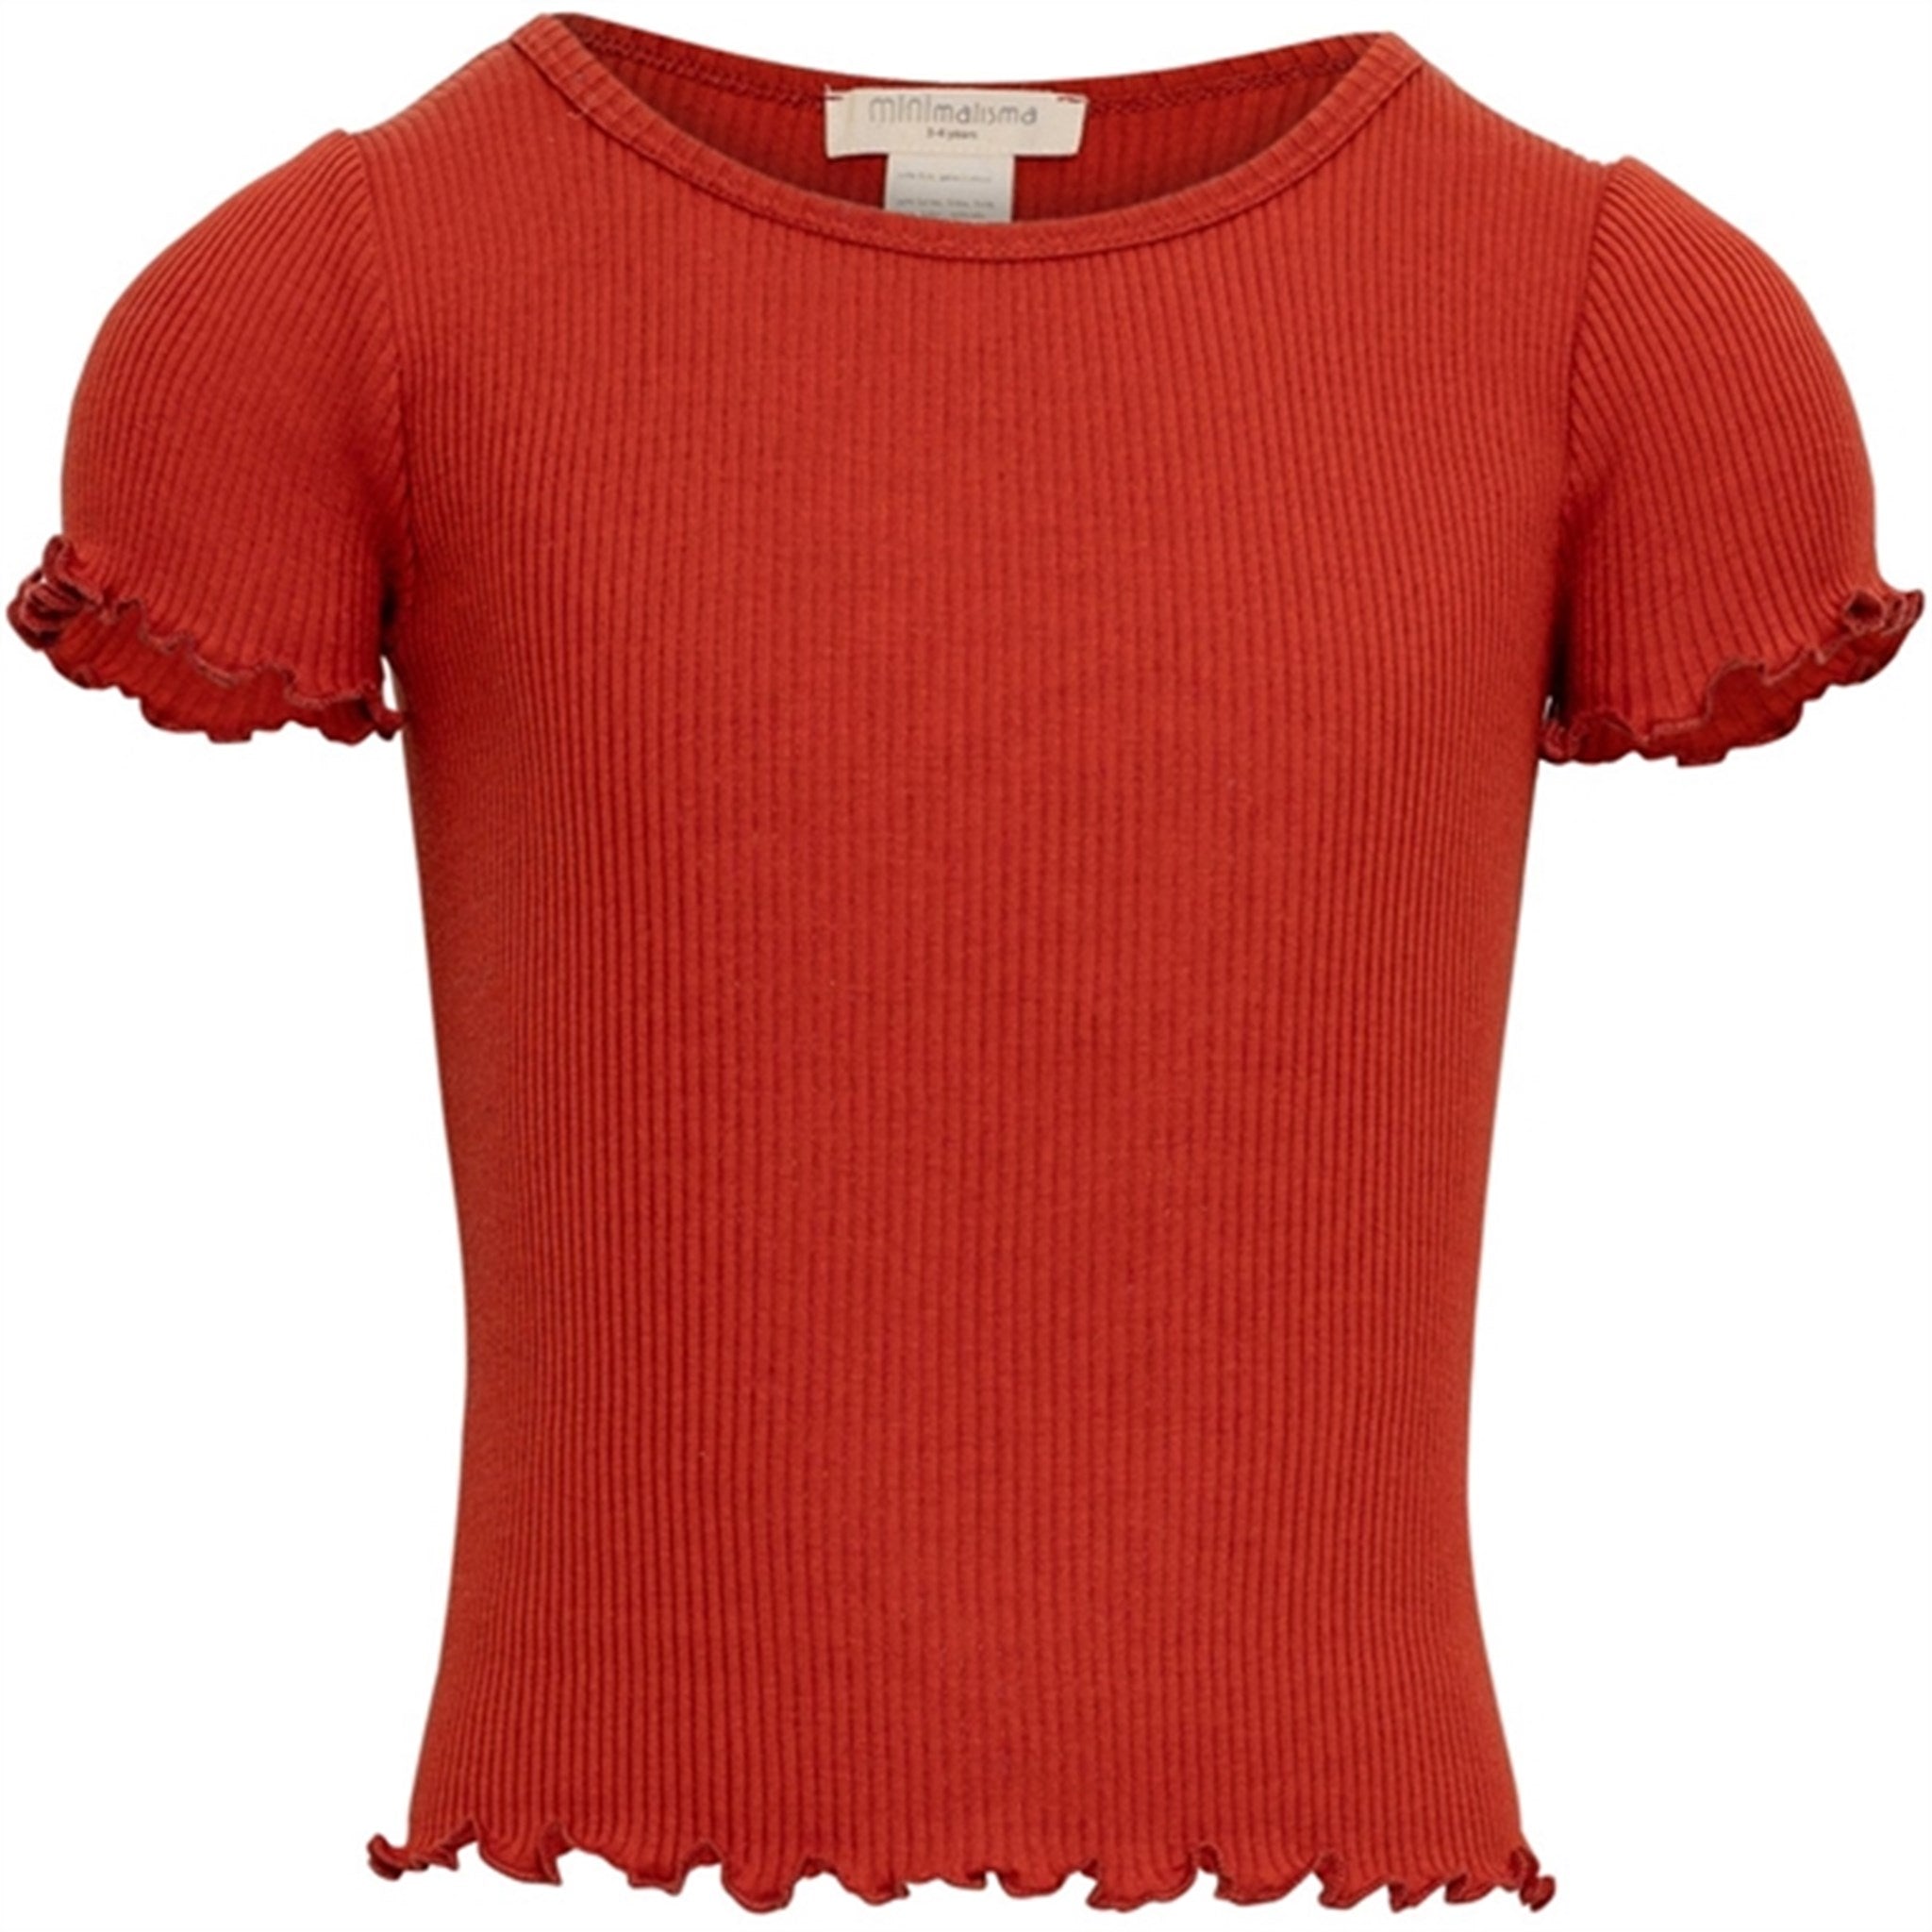 Minimalisma Blomst T-shirt Poppy Red